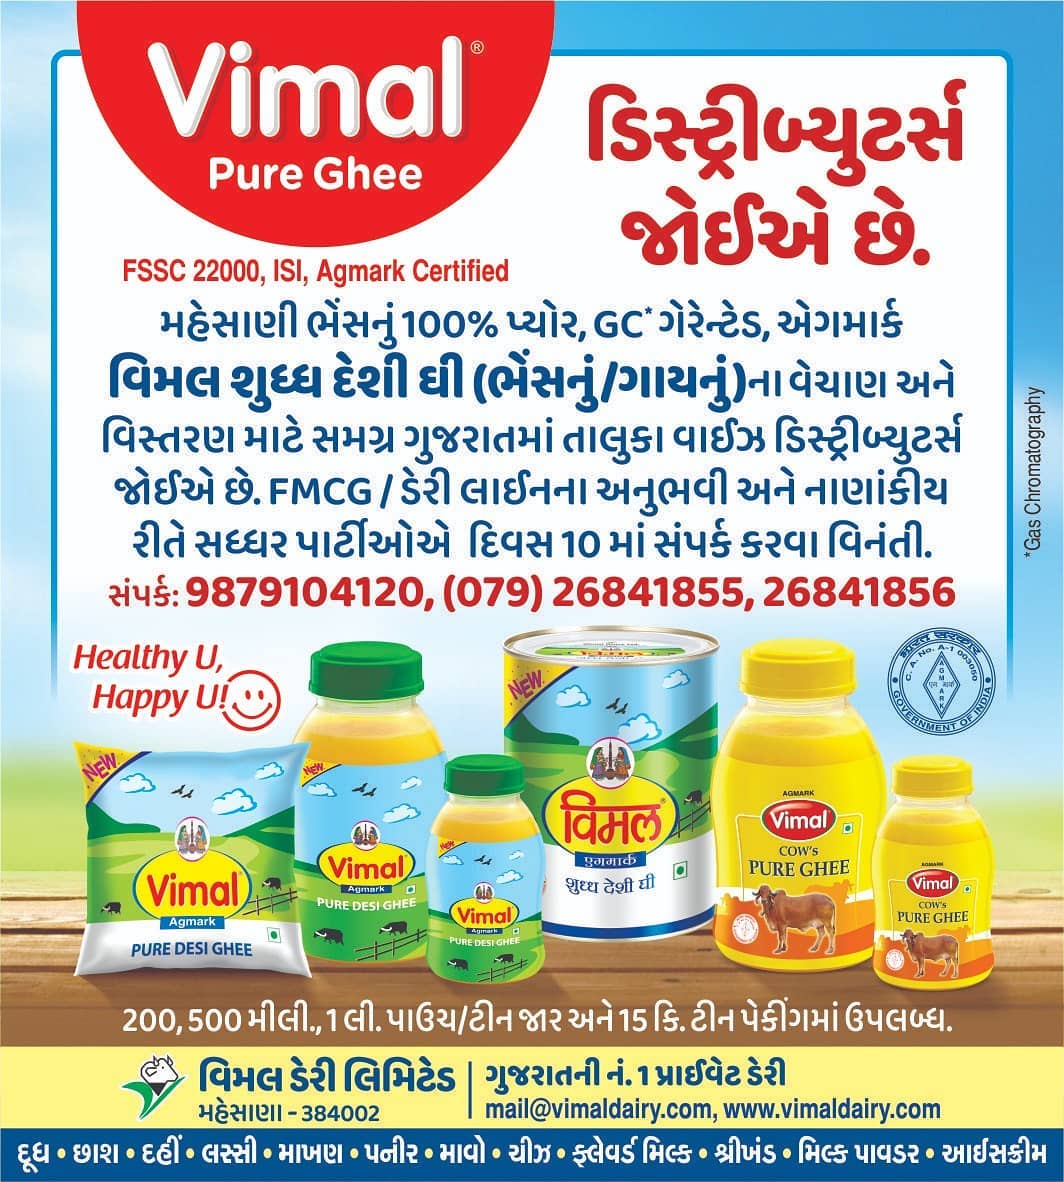 ડિસ્ટ્રીબ્યુટર્સ જોઈએ છે. ડેરી લાઈનના અનુભવીઓએ સત્વરે સંપર્ક કરવો.

#Vimal #Distributor #Salesstaff #Ahmedabad #Gujarat